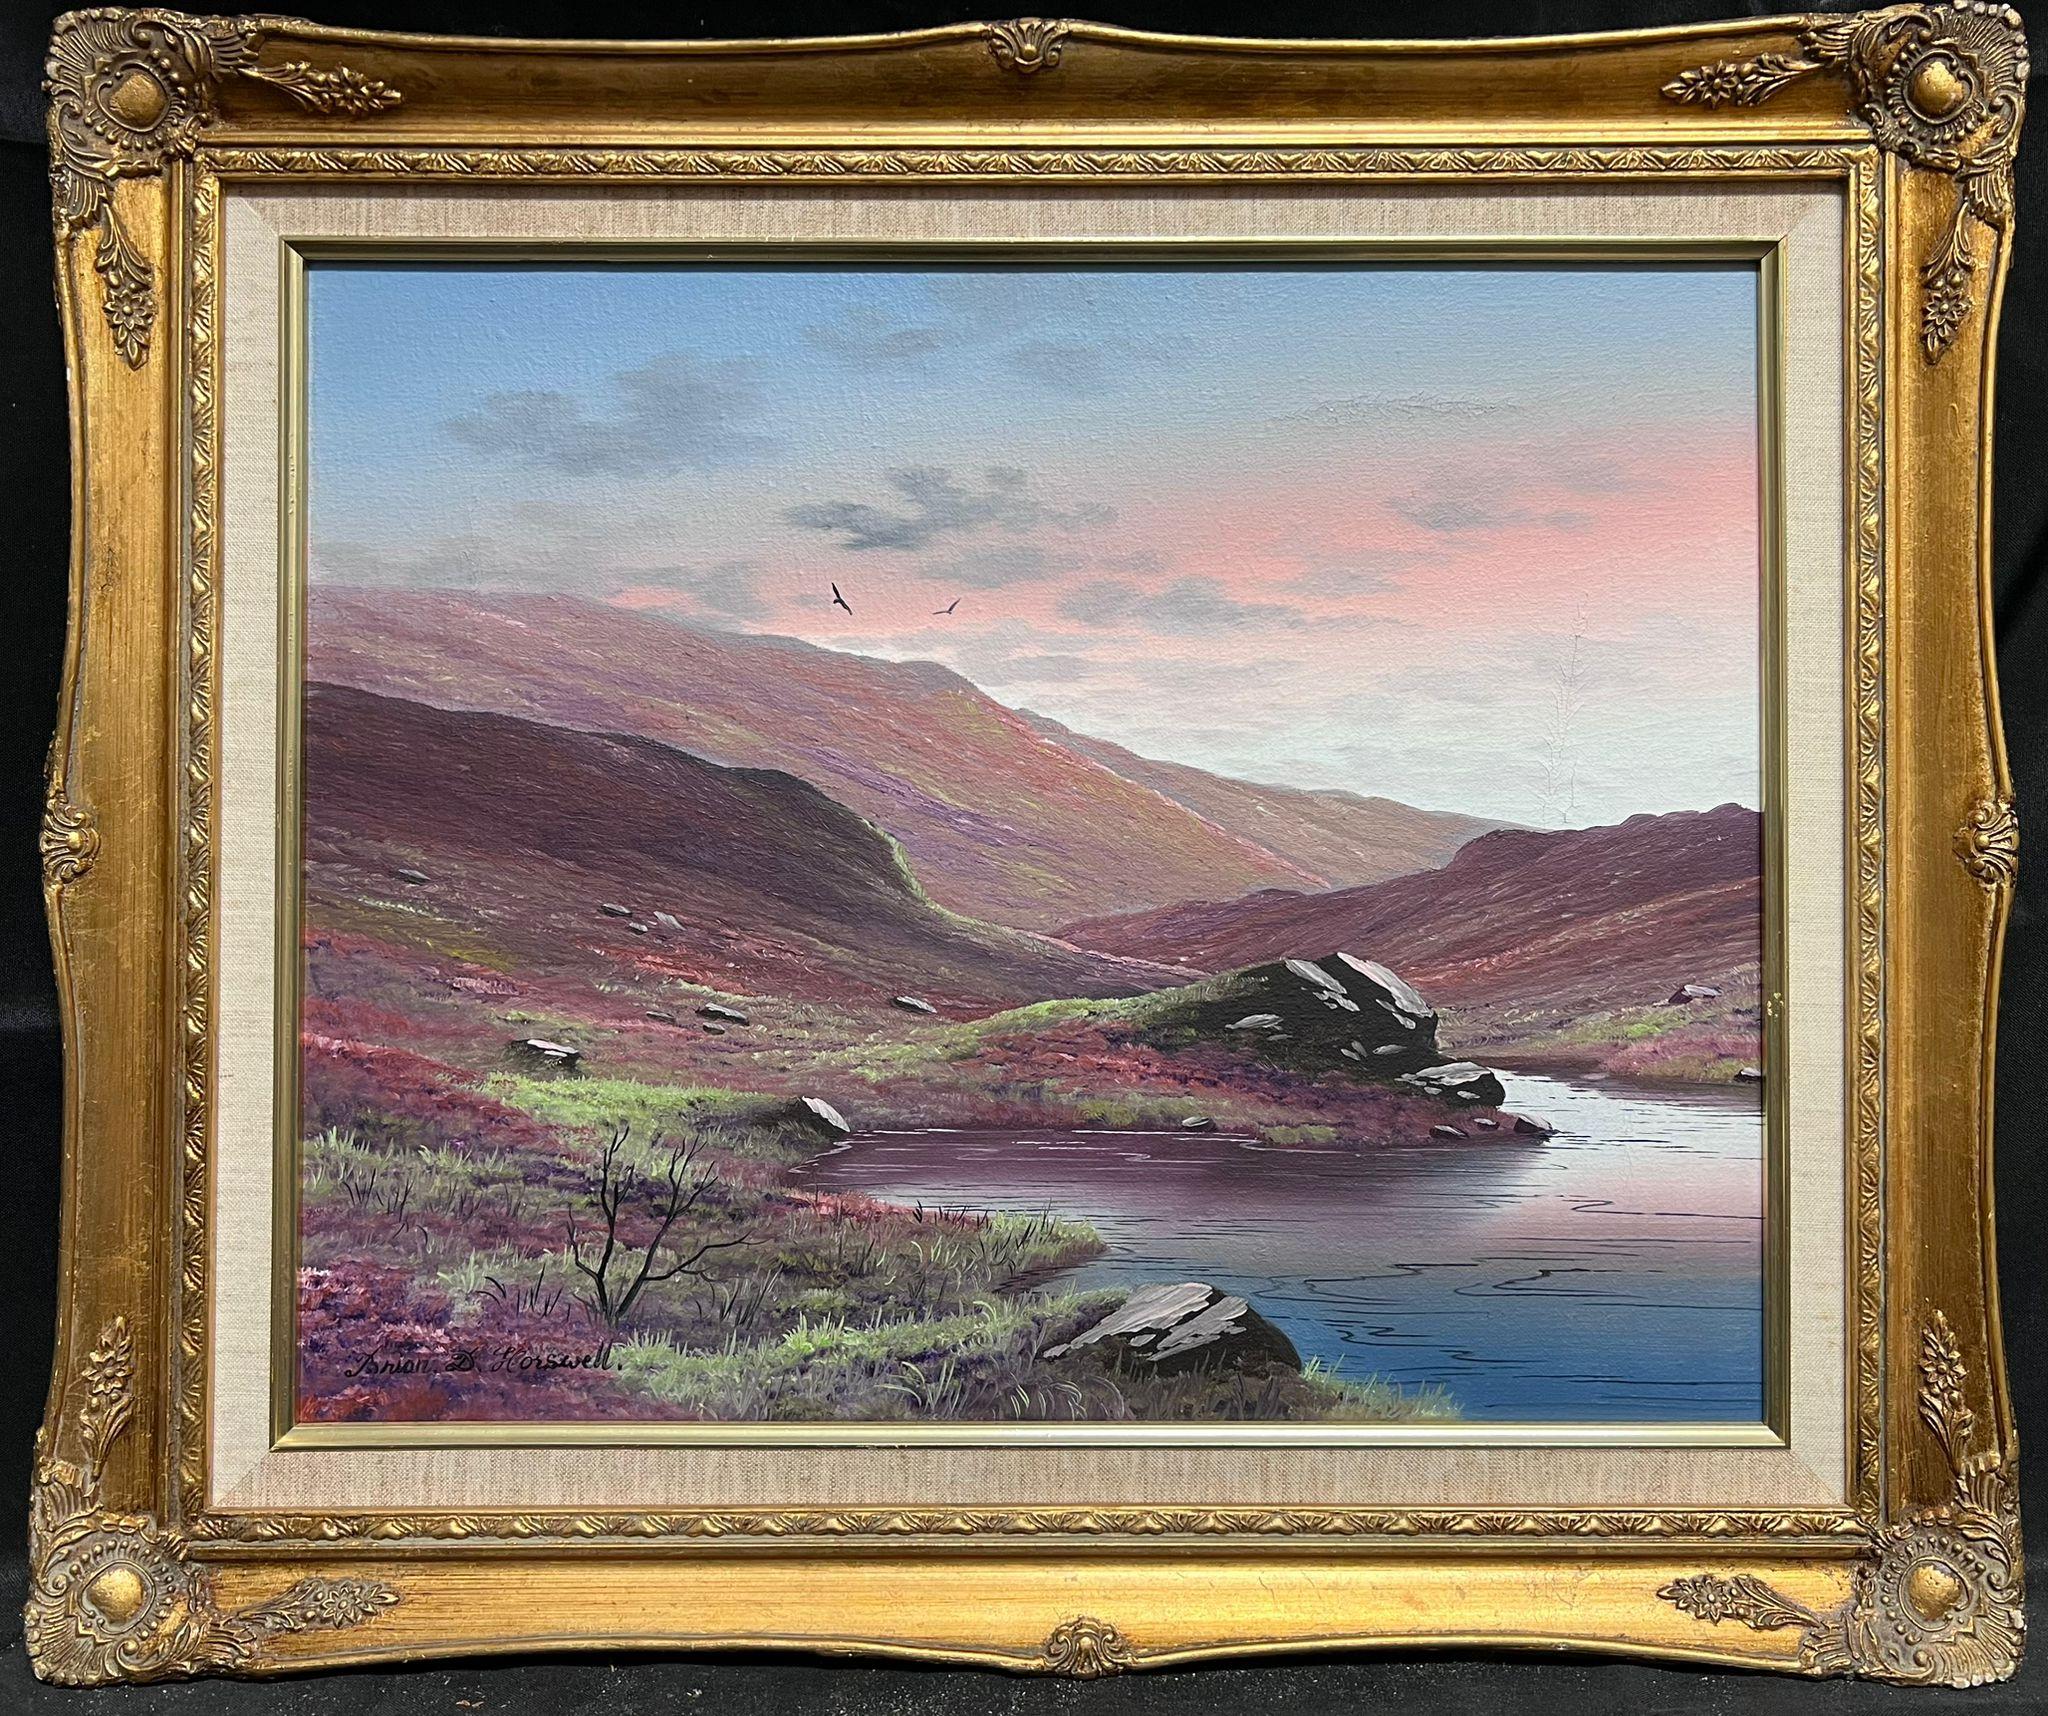 Brian Horsewell Landscape Painting - Scottish Highlands Sunset Atmospheric Sky River Landscape Signed British Oil 